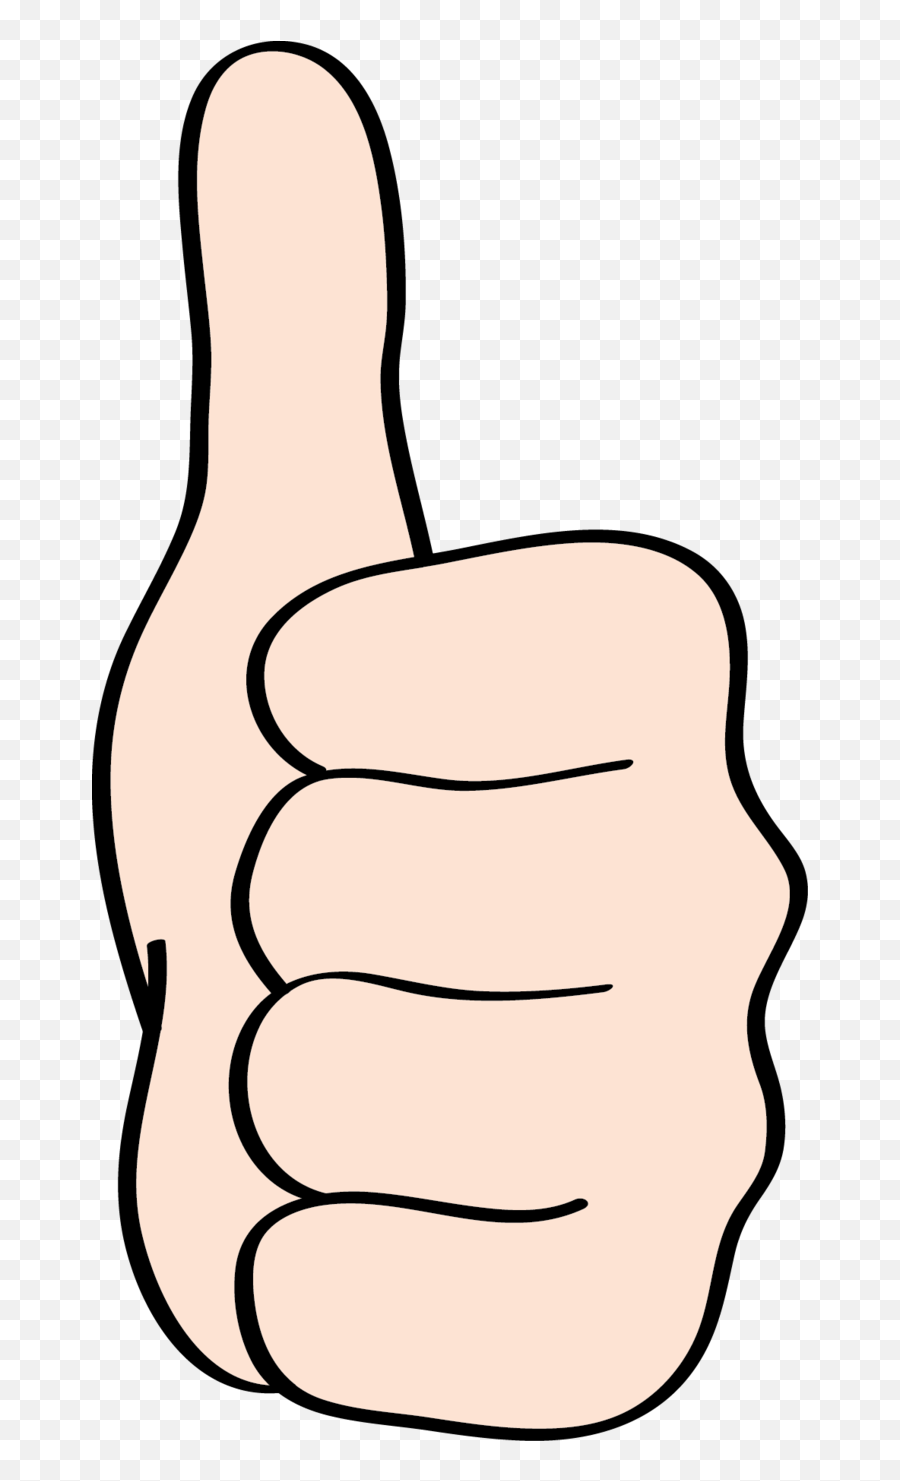 Ein Hand Zeigt Seinen Daumen - Daumen Nach Oben Clipart Emoji,Daumen Unten Emoticon Facebook